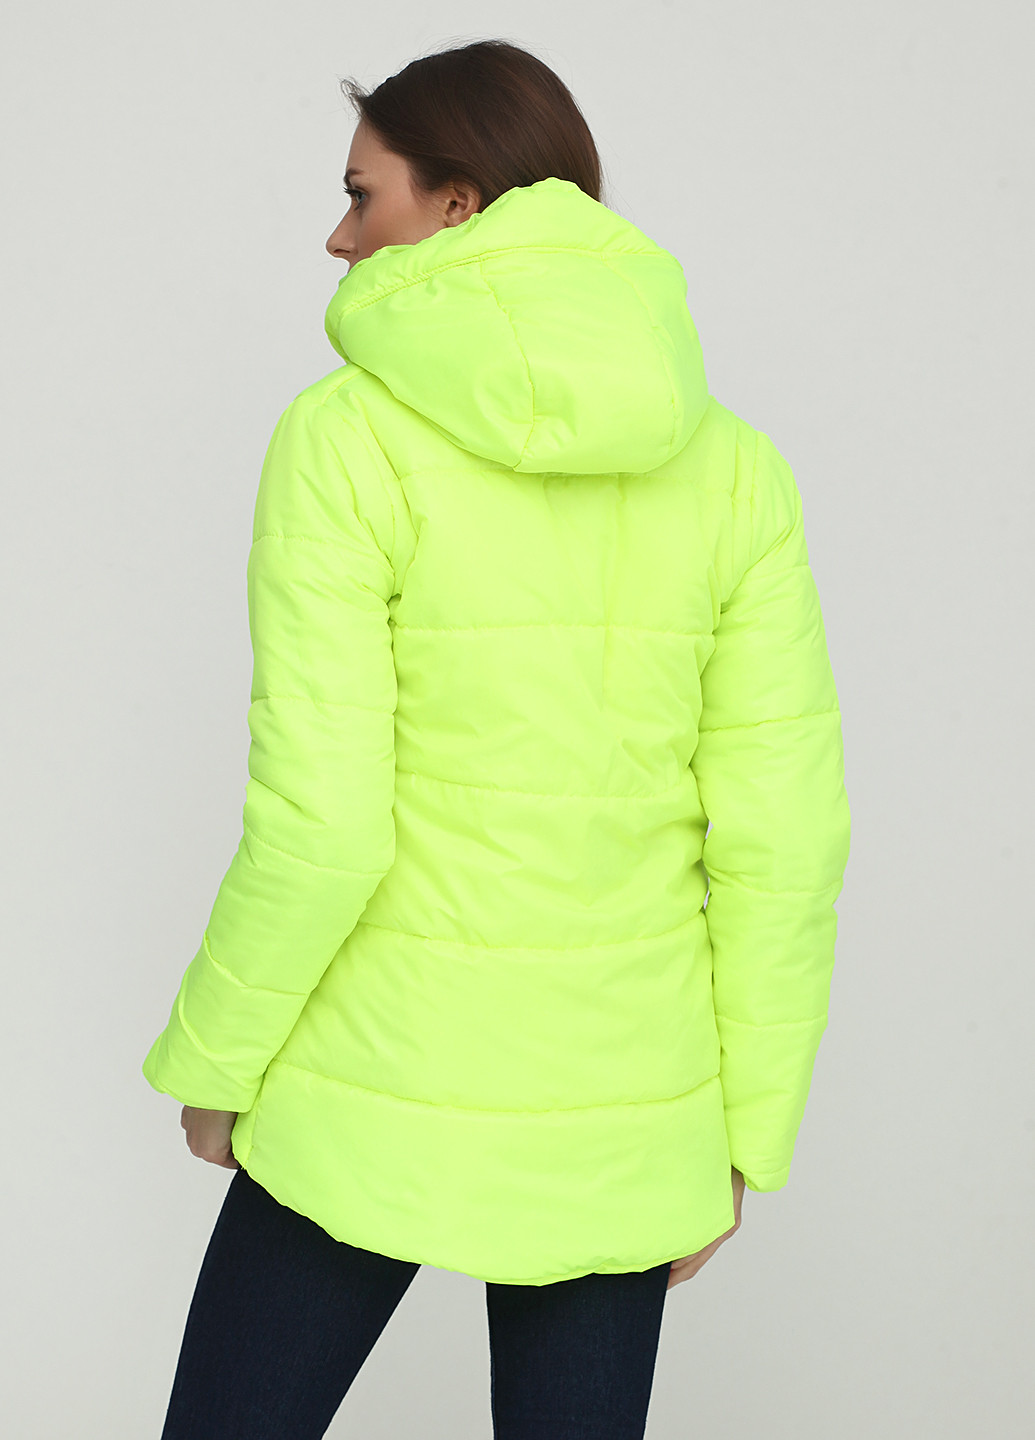 Кислотно-зеленая демисезонная куртка Ravol